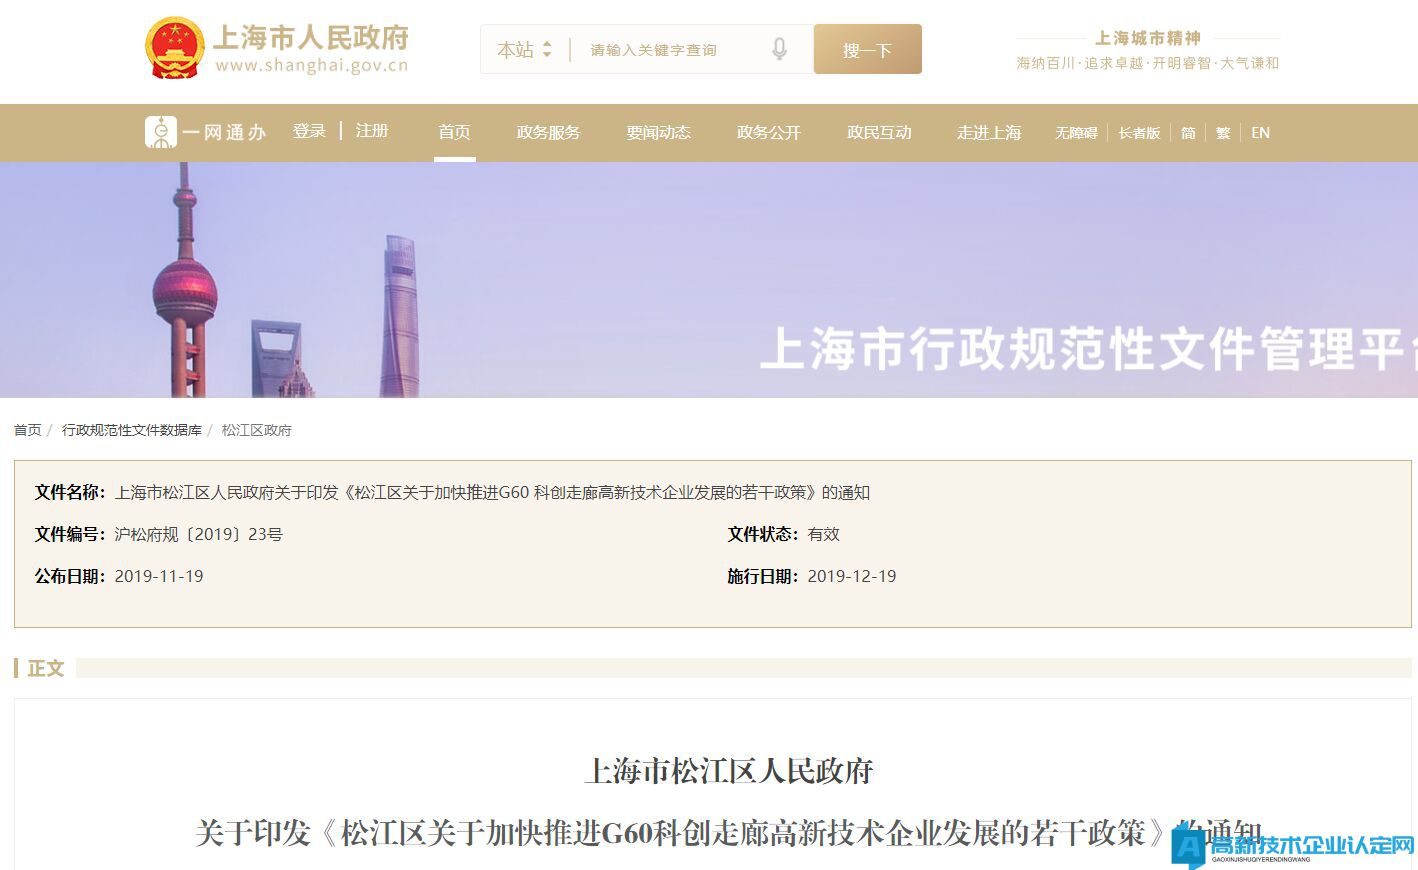 上海市松江区高新技术企业奖励政策：松江区关于加快推进G60科创走廊高新技术企业发展的若干政策